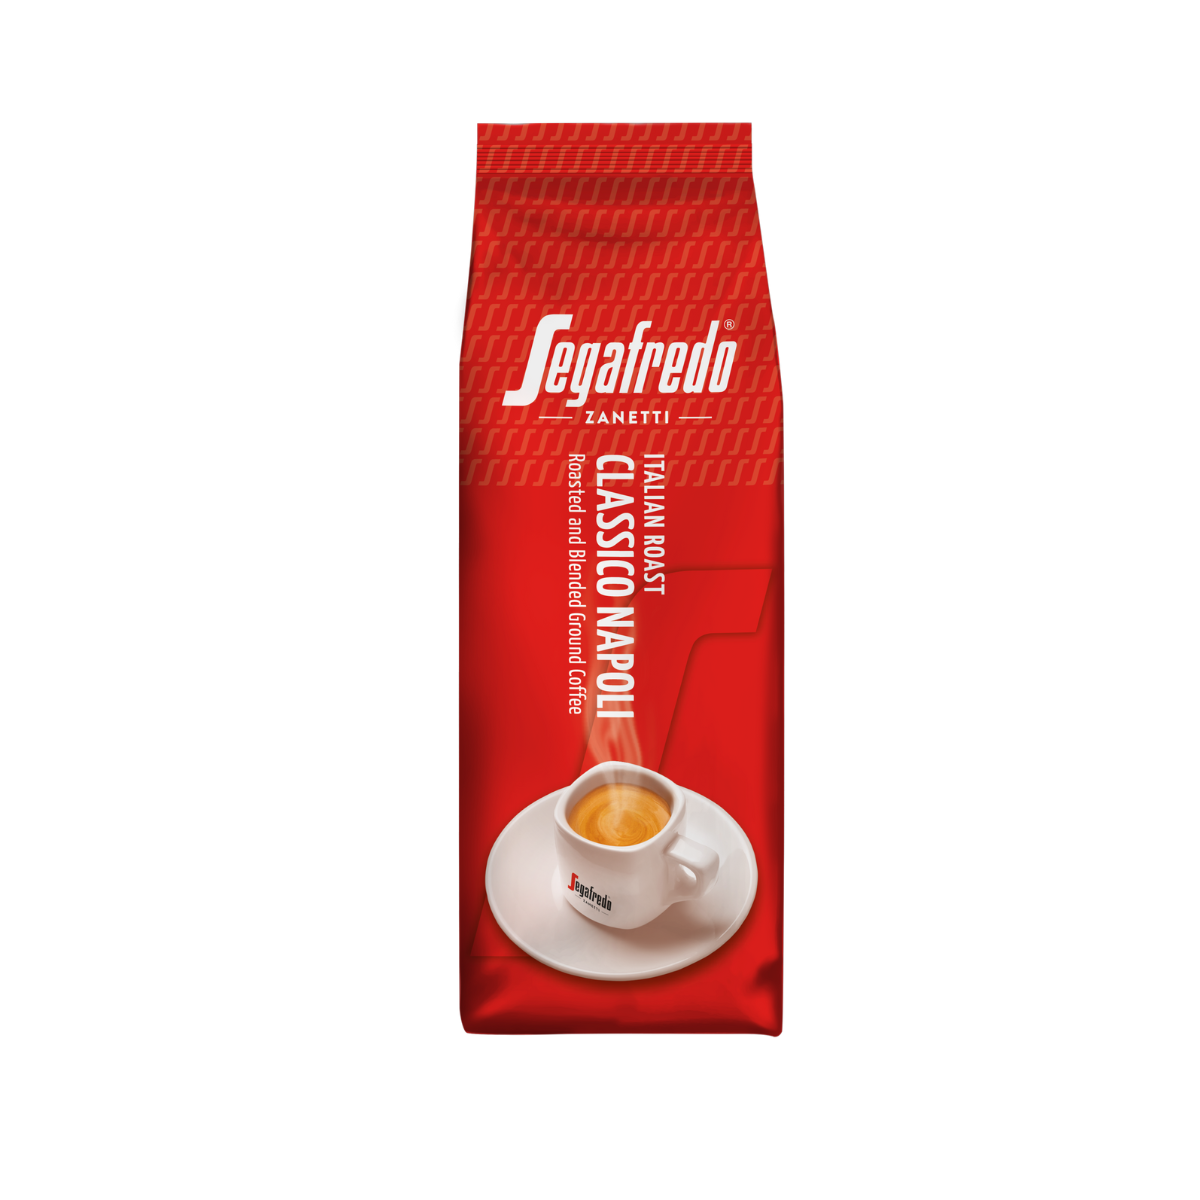 Segafredo Zanetti - Classico Napoli Ground Coffee  (200g)